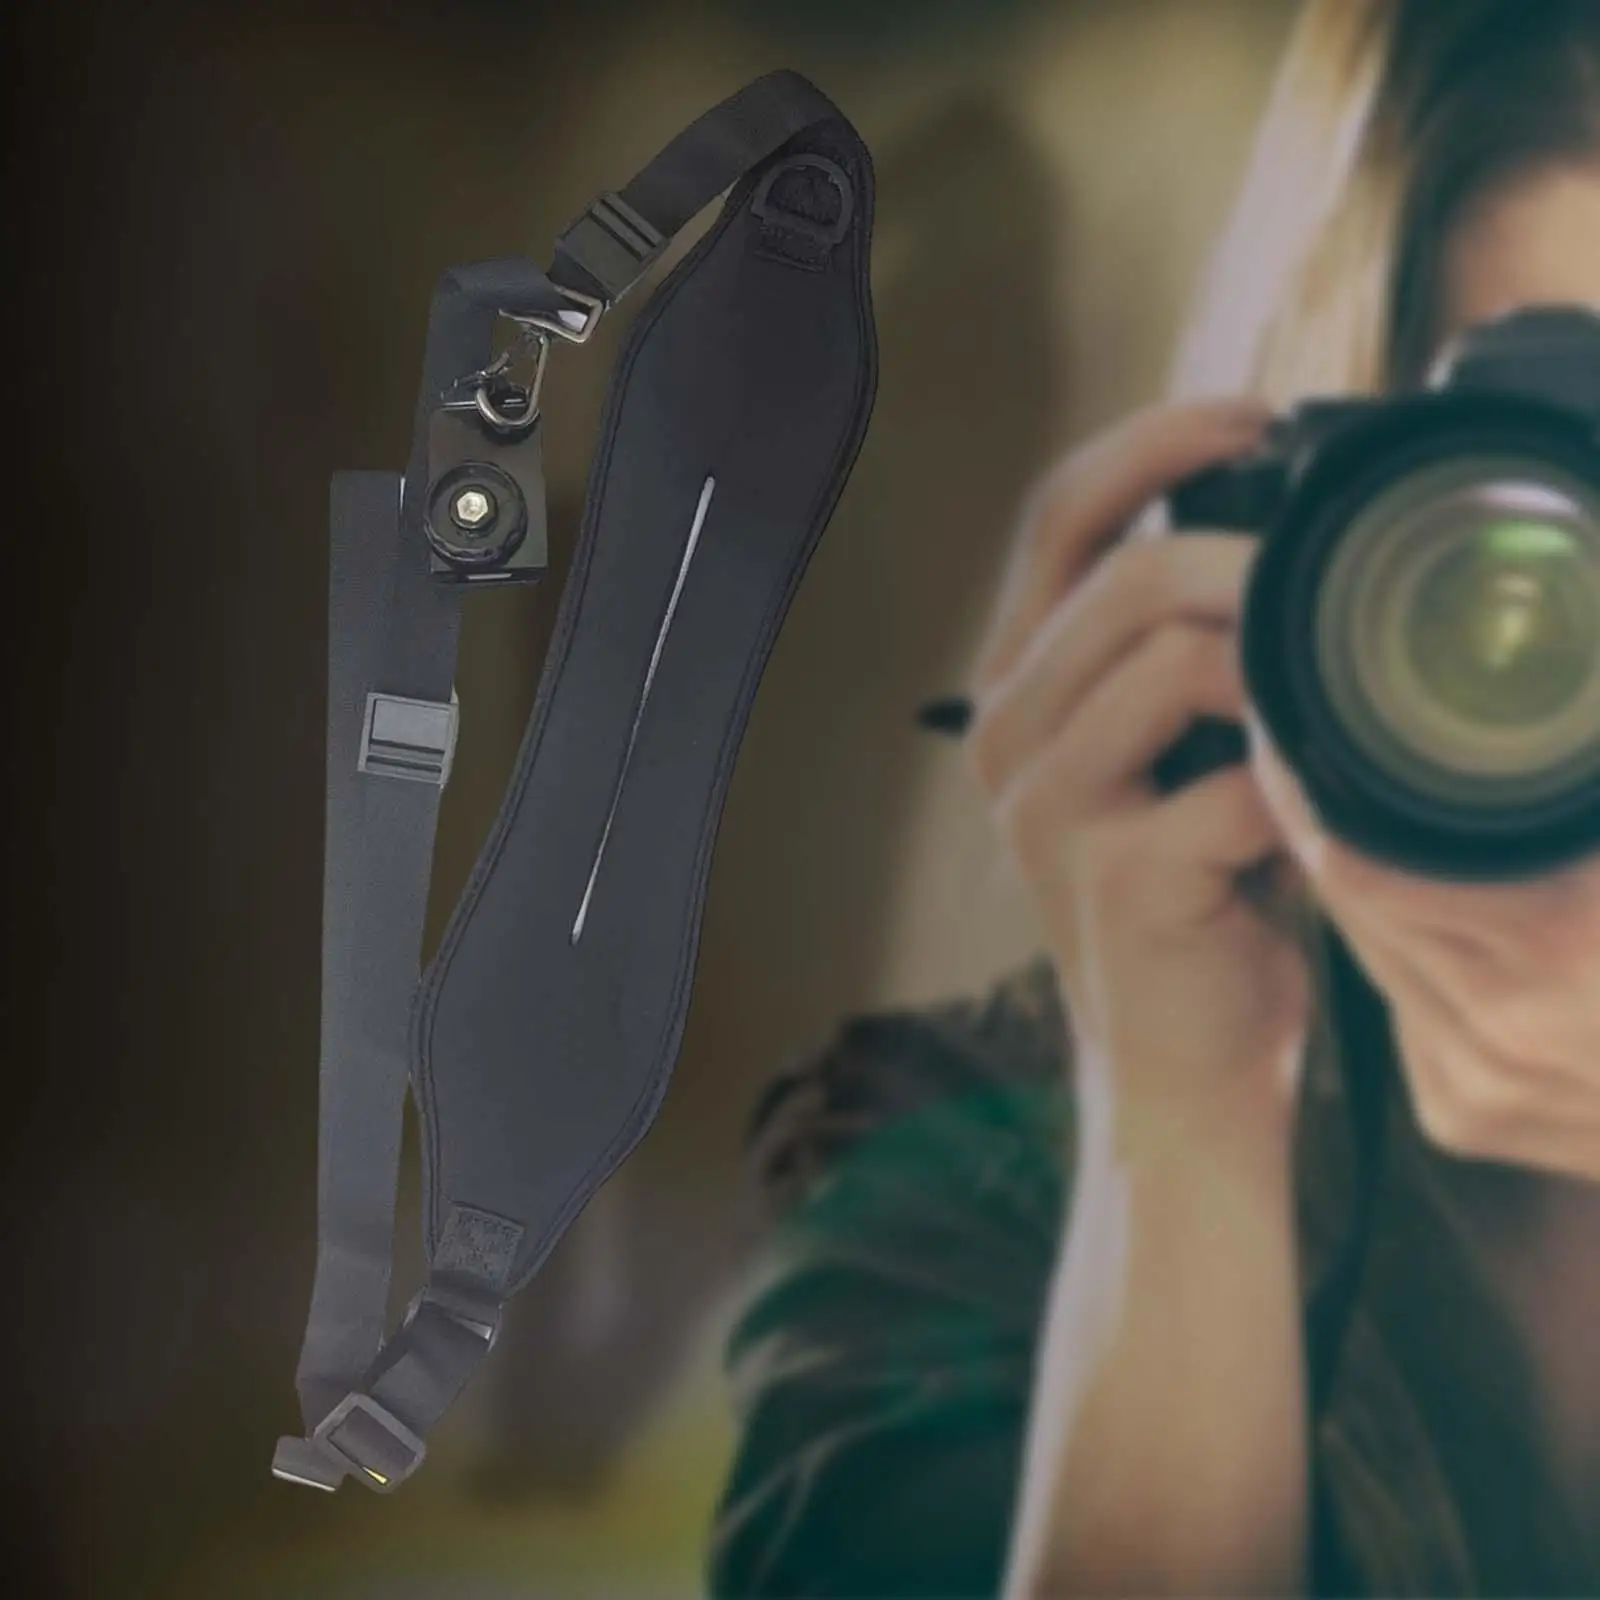 Camera Shoulder Strap Camera strap Comfortable Durable Photography Strap Shoulder Belt for Camera Photographer